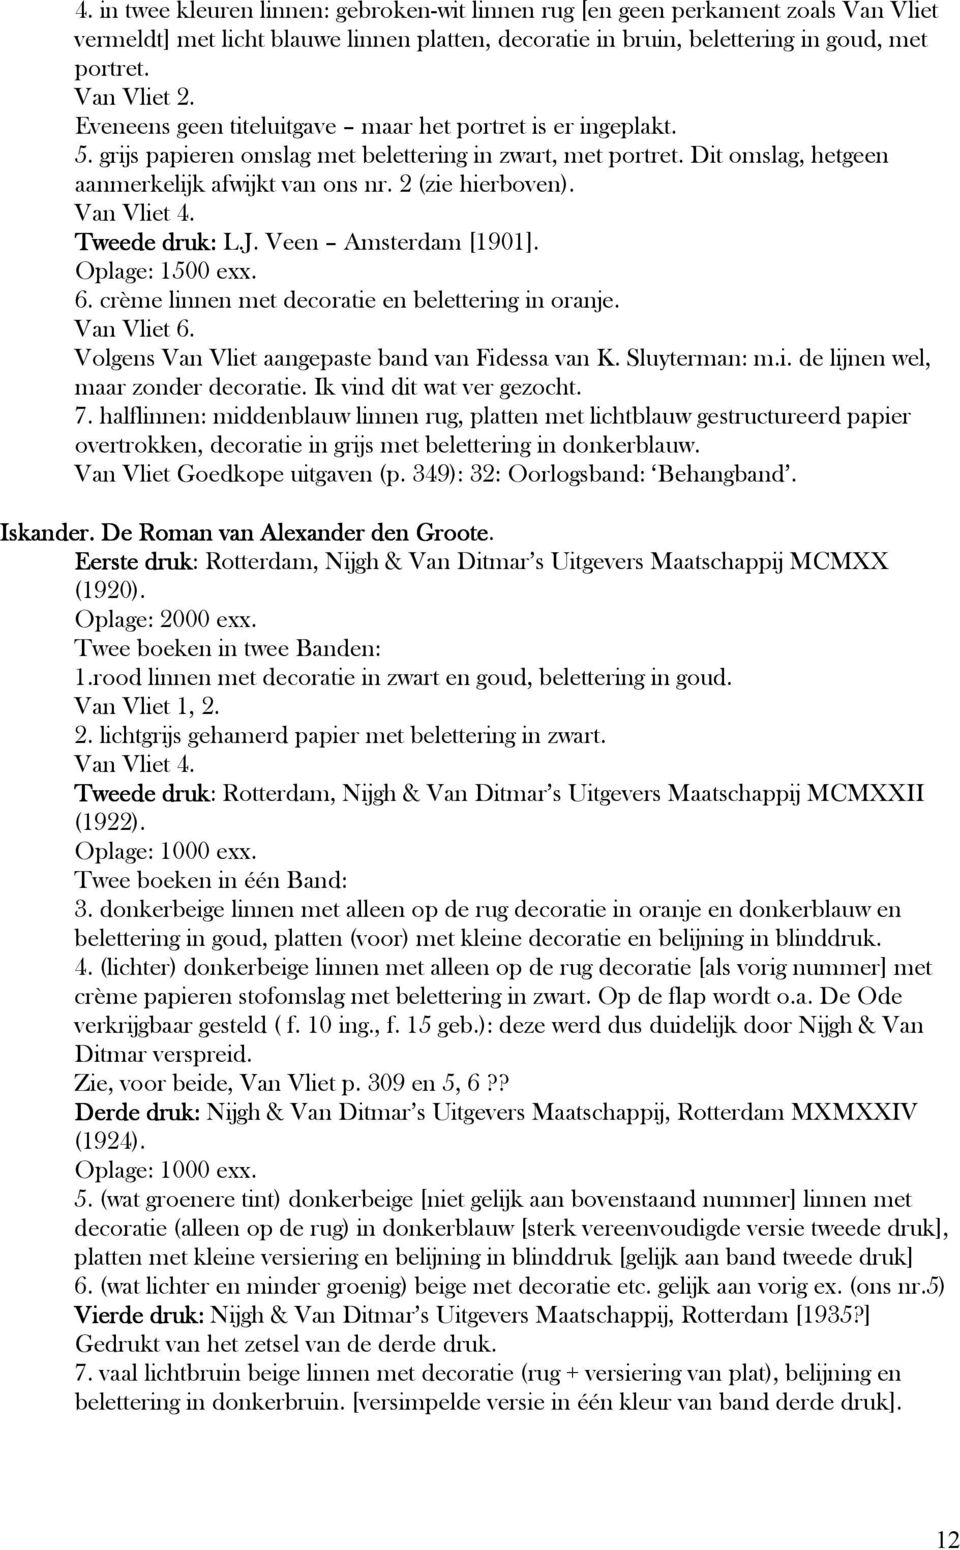 Van Vliet 4. Tweede druk: L.J. Veen Amsterdam [1901]. Oplage: 1500 exx. 6. crème linnen met decoratie en belettering in oranje. Van Vliet 6. Volgens Van Vliet aangepaste band van Fidessa van K.